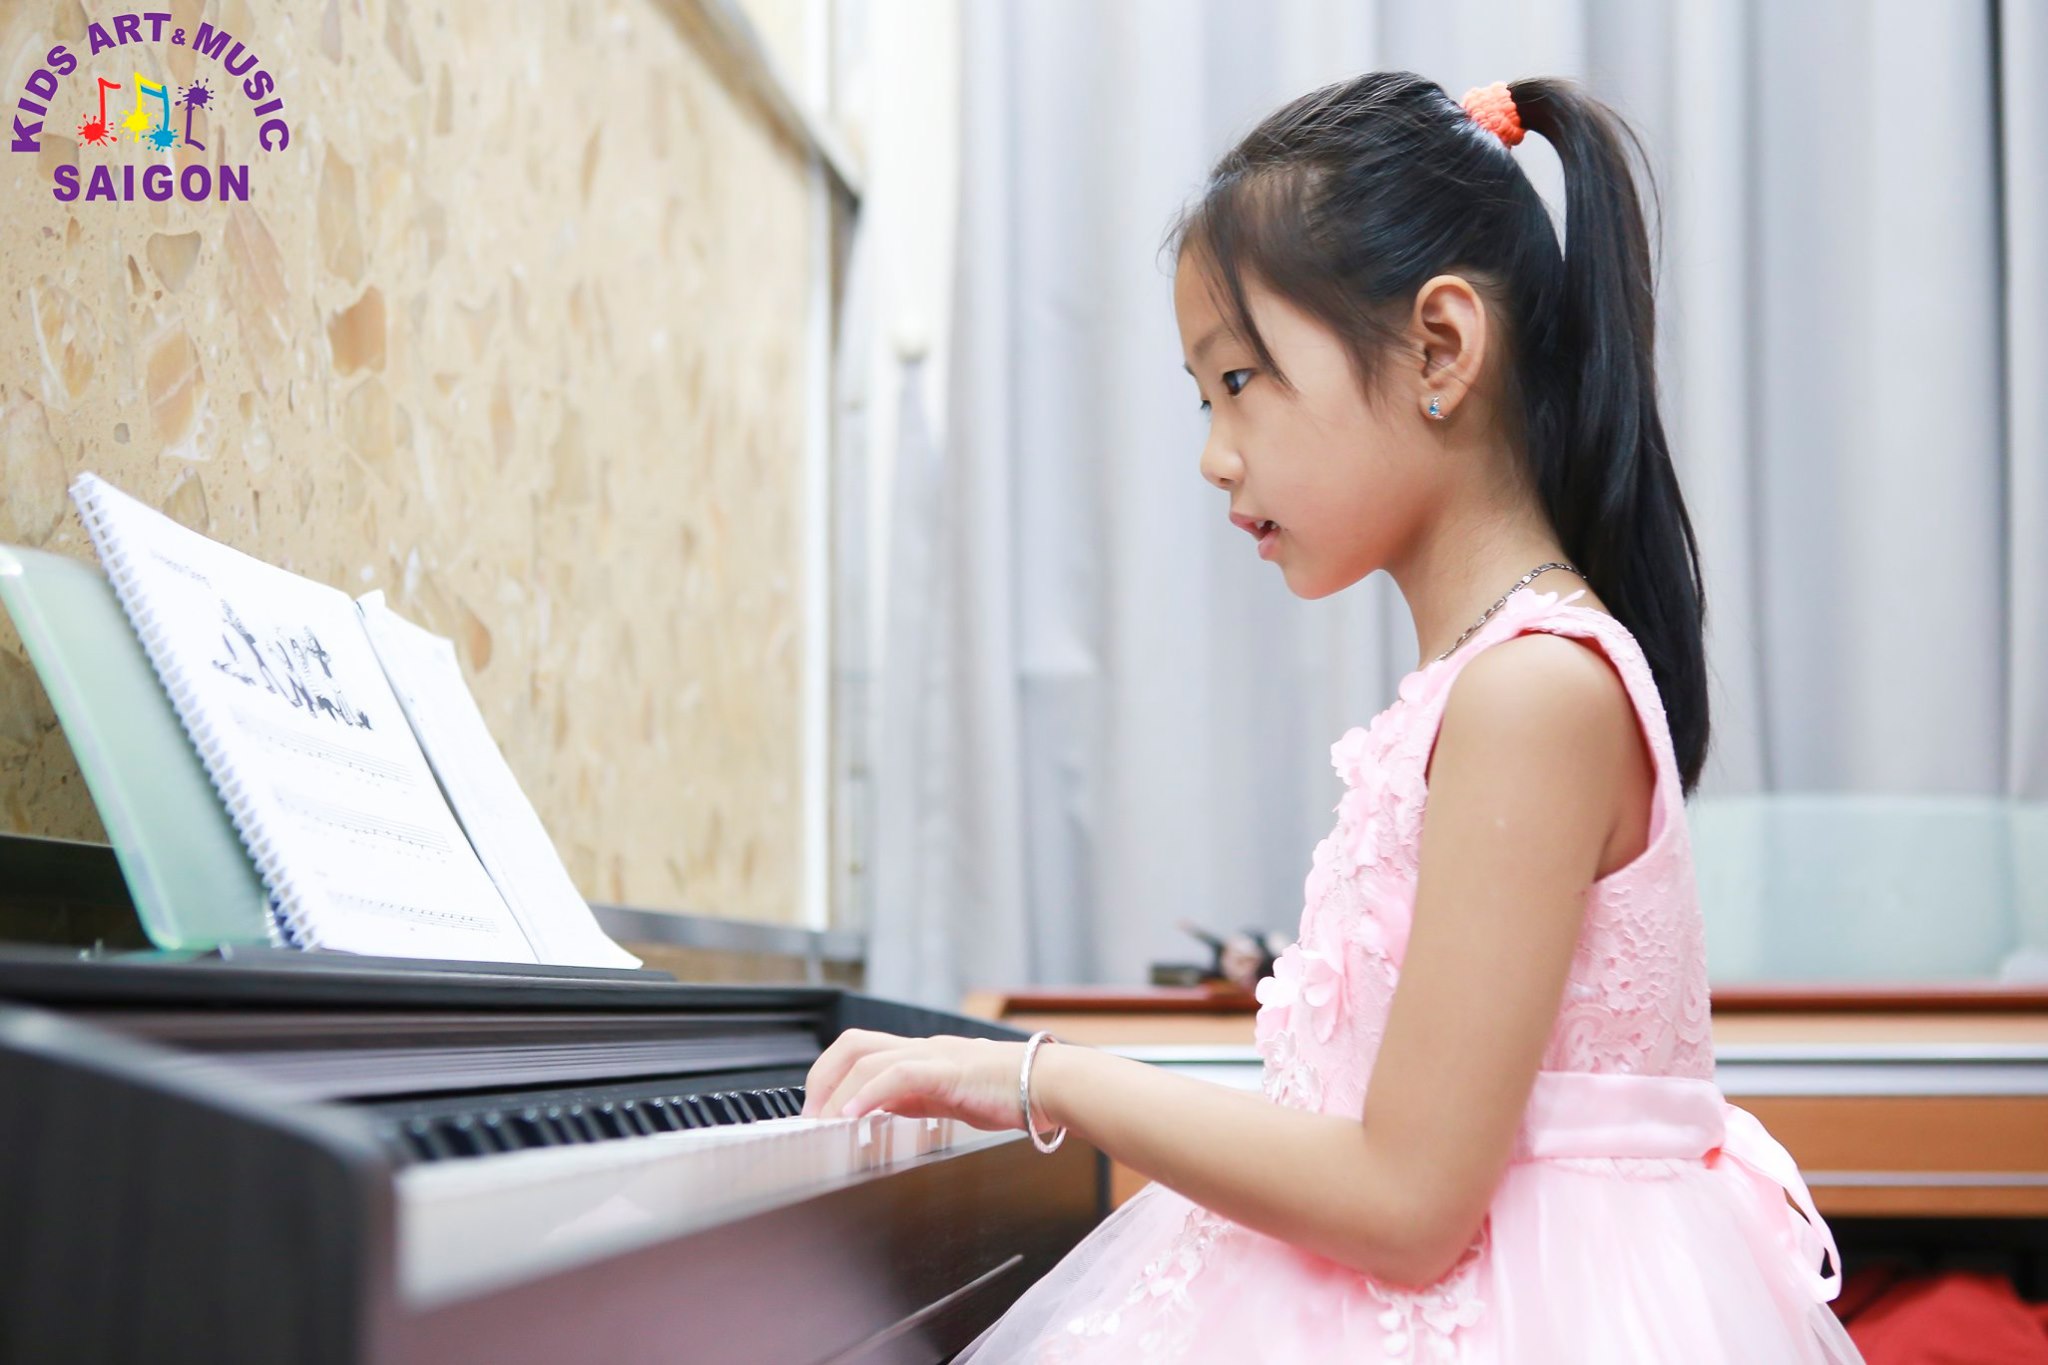 6 bước kiểm tra chất lượng khi mua đàn piano điện ở Hà Nội - hình ảnh 26 bước kiểm tra chất lượng khi mua đàn piano điện ở Hà Nội - hình ảnh 1